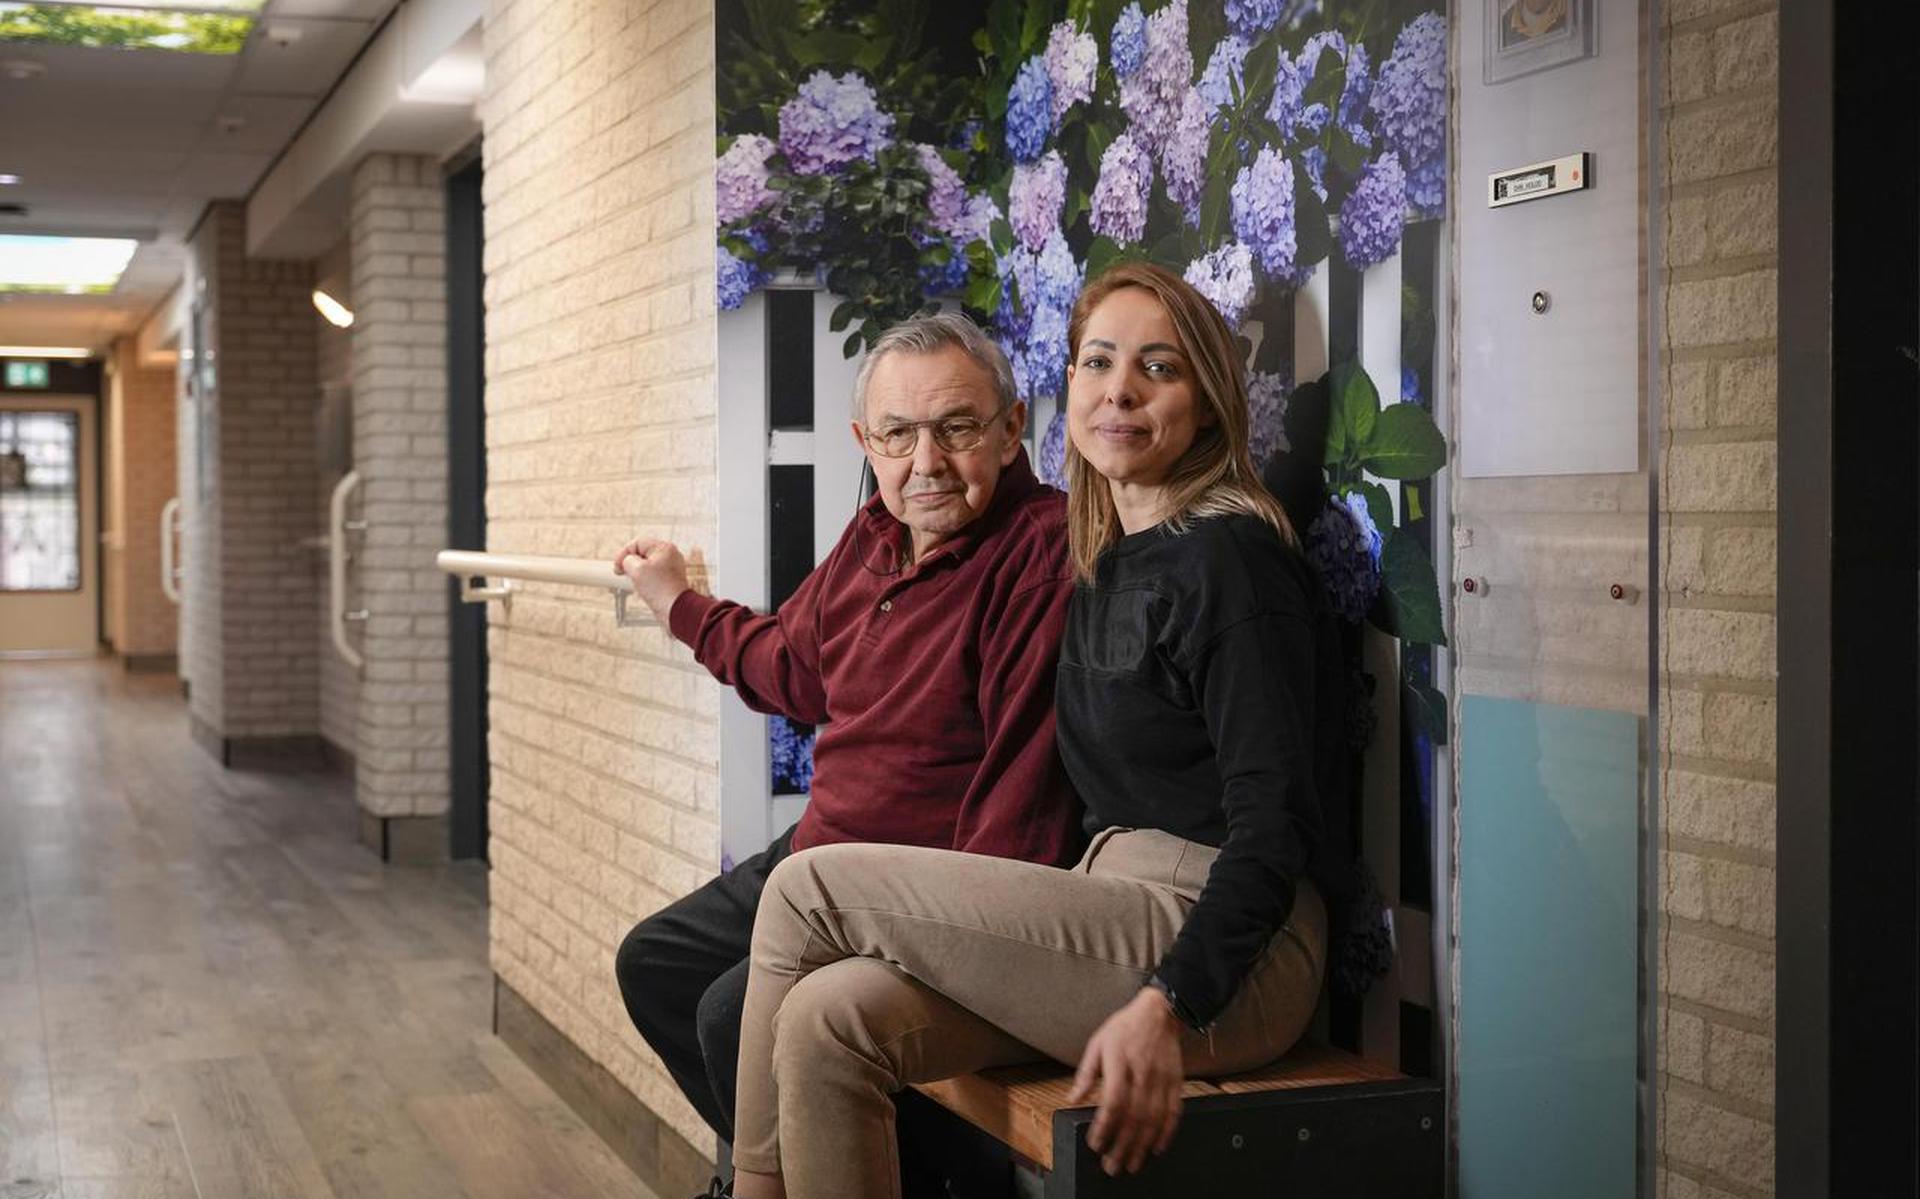 Jelena Lesnik en haar demente stiefvader Dusan Holod, die lang op een wachtlijst stond voor het verpleeghuis en pas aan de beurt was nadat het thuis ernstig misging, waarvan zijn echtgenote het slachtoffer was.